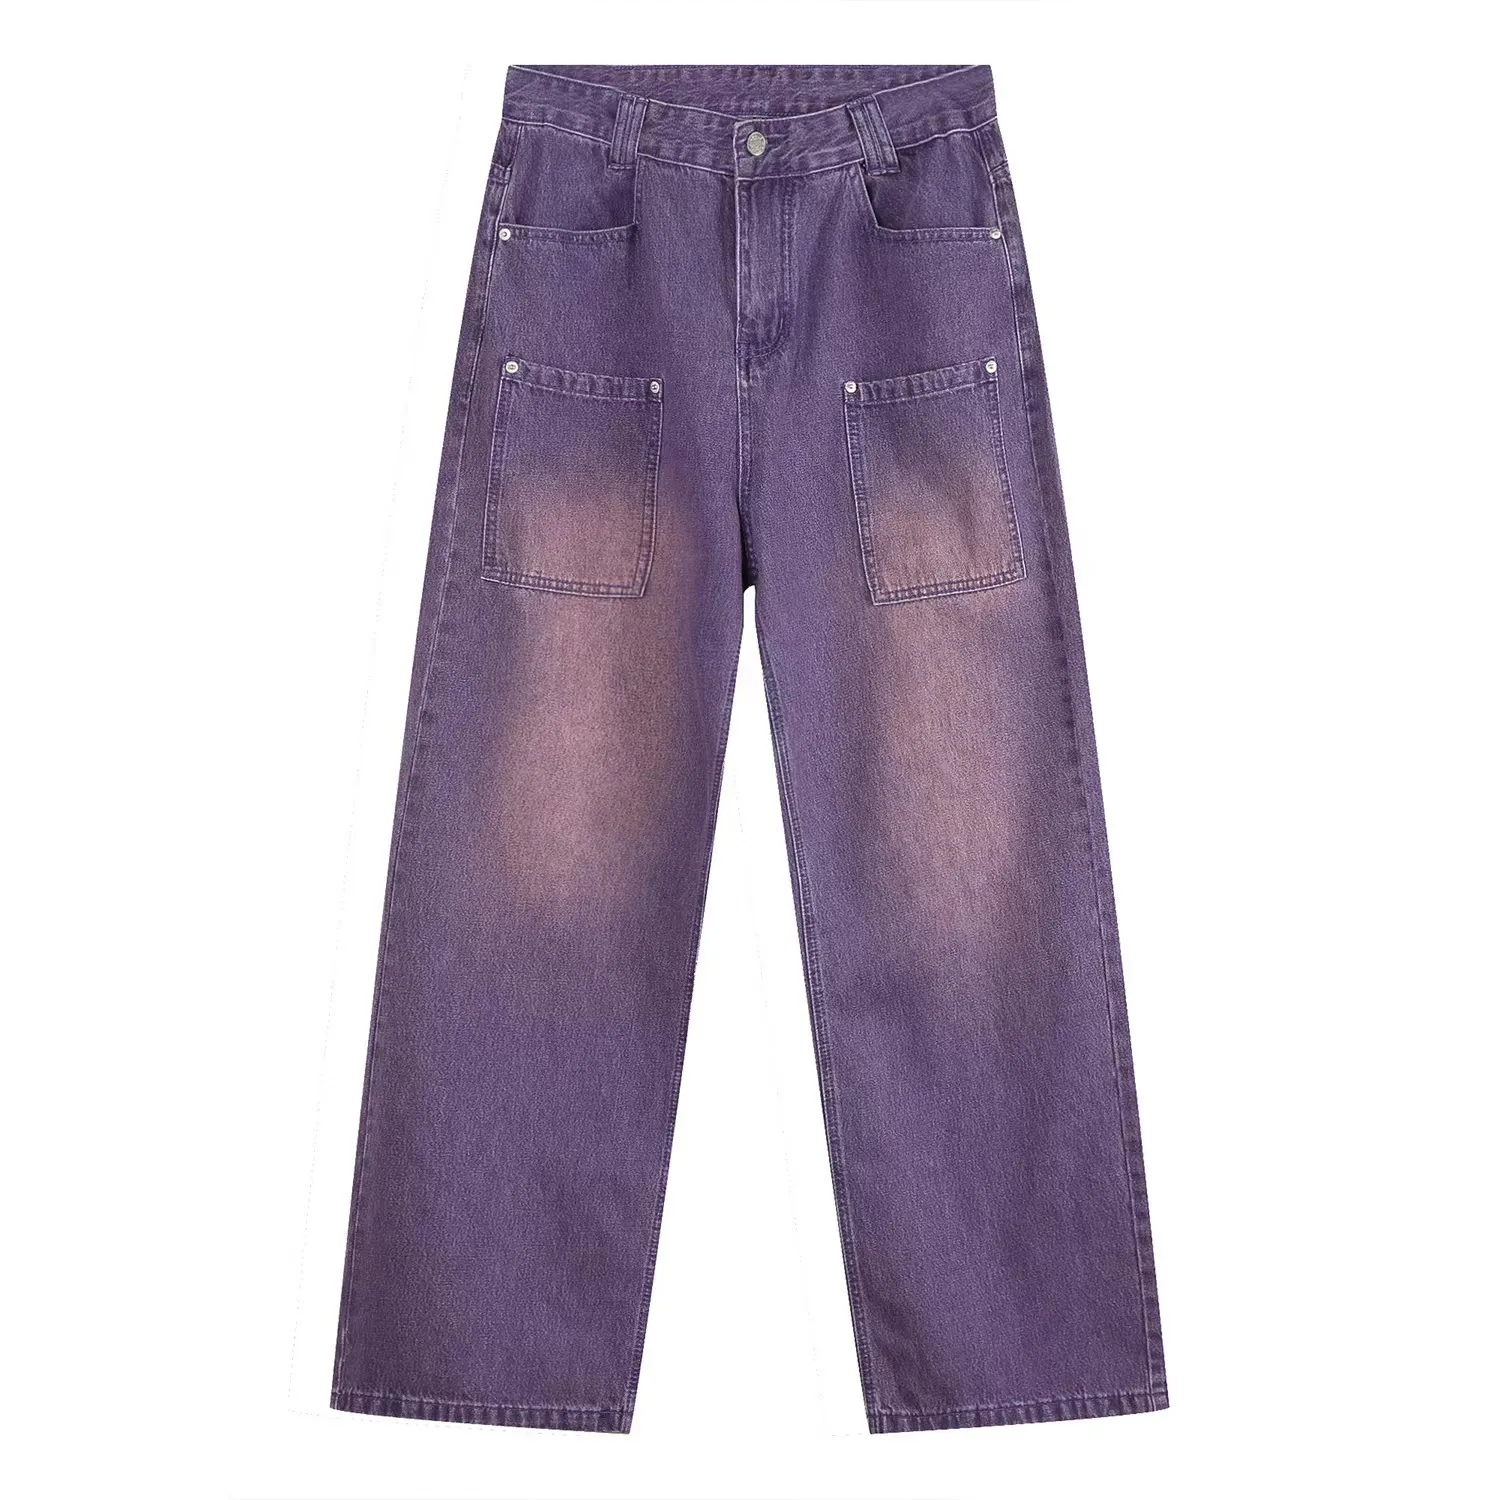 Vintage fioletowe dżinsy umyte, aby zrobić stare CP workowate dżinsy